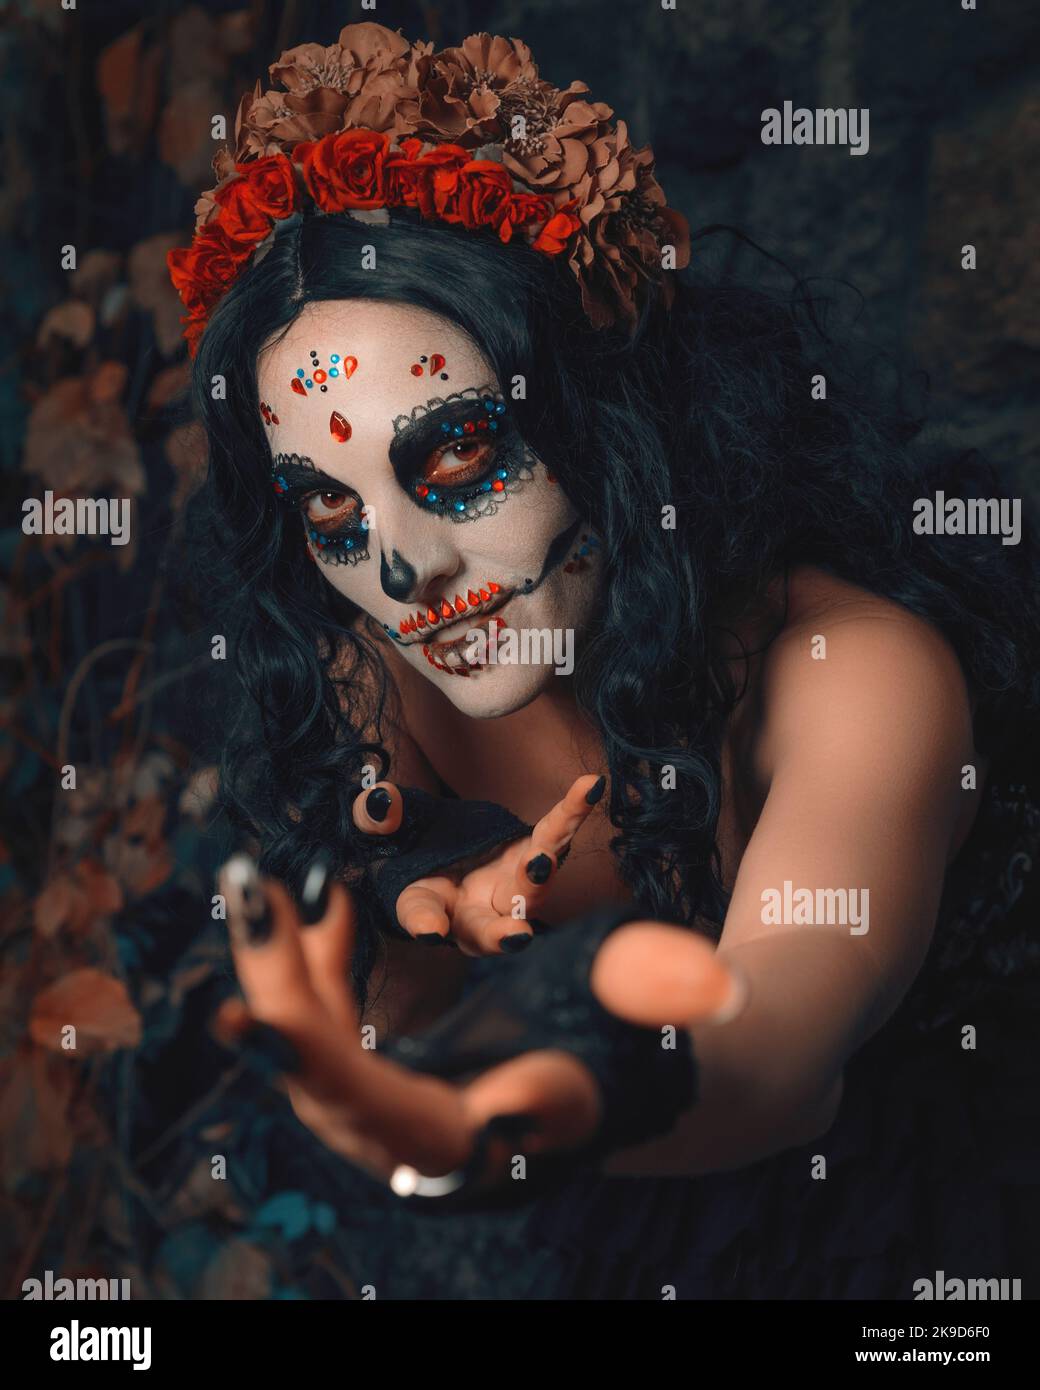 Day of the Dead. Dia de los muertos. Woman with sugar skull makeup. Santa Muerte. Calavera Catrina. Halloween Stock Photo